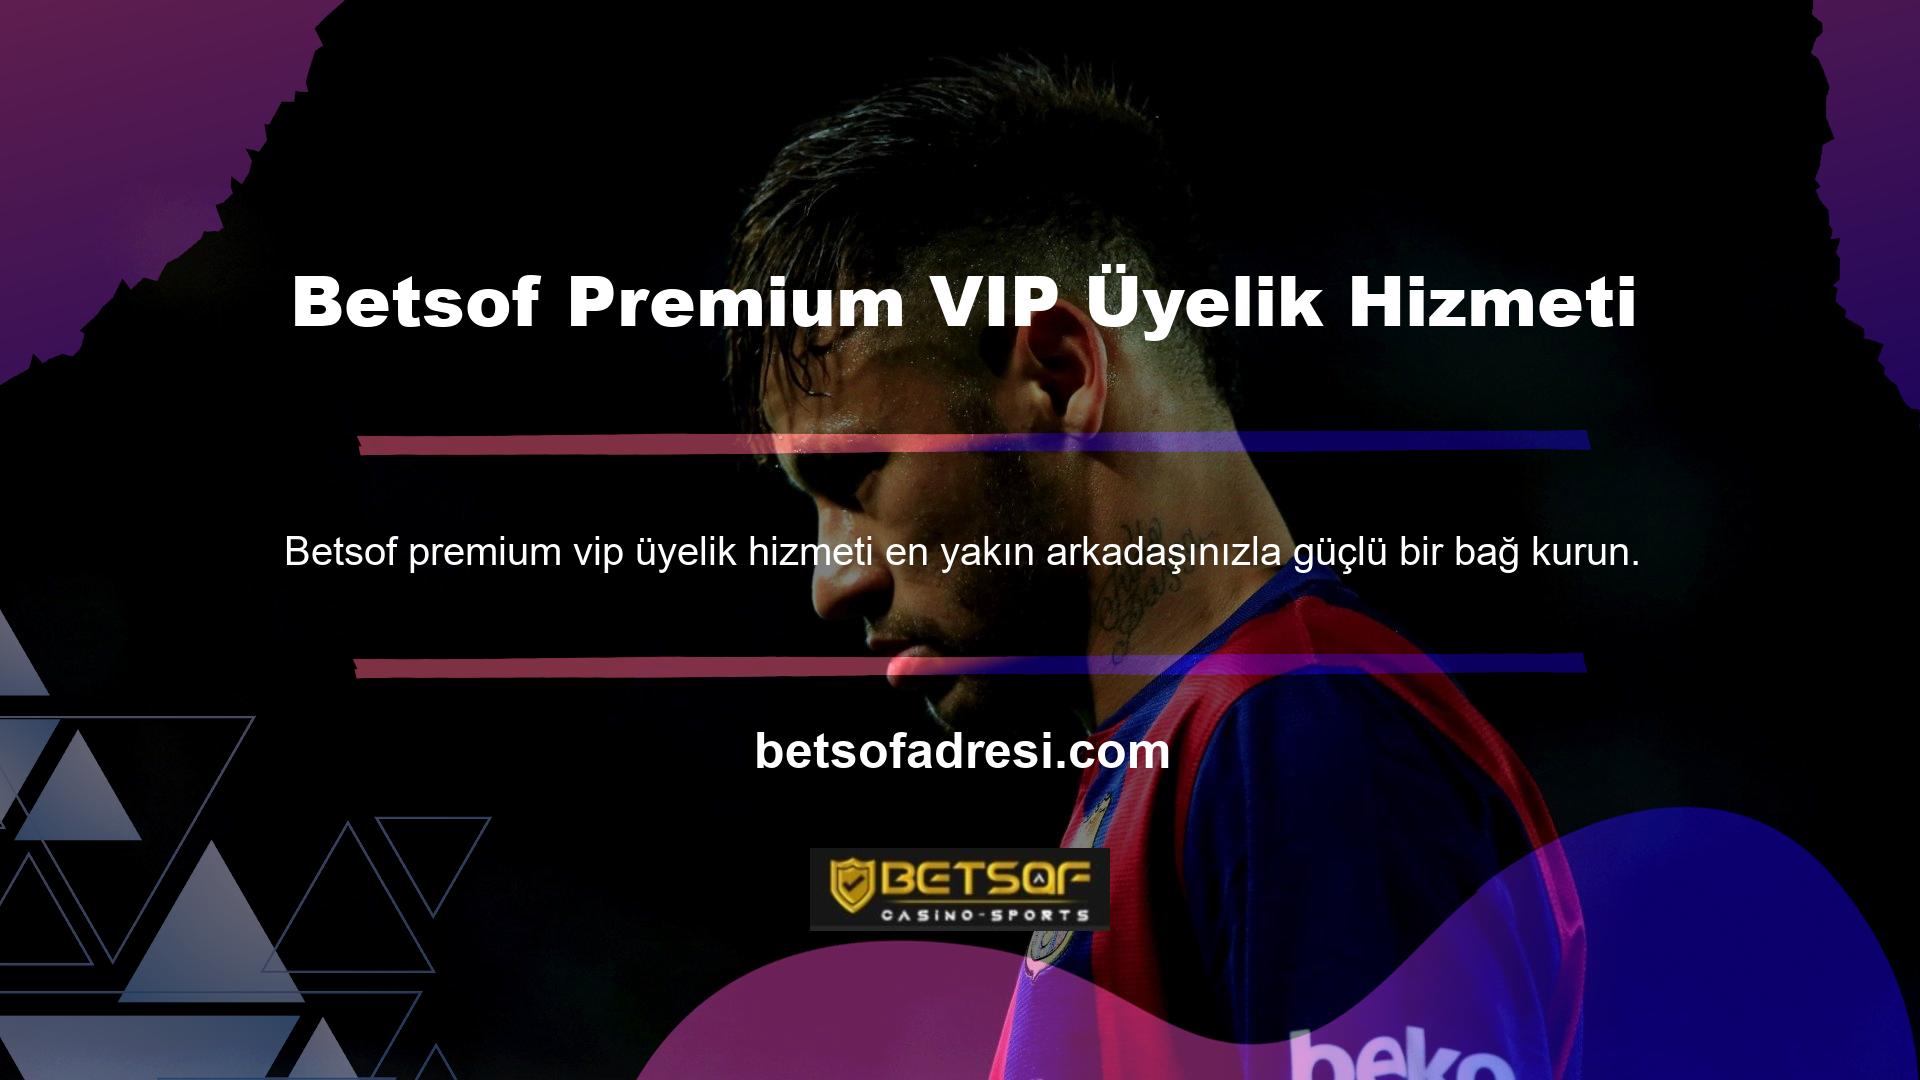 Betsof premium VIP üyelik hizmetinin tek alternatifi, özel teklifidir